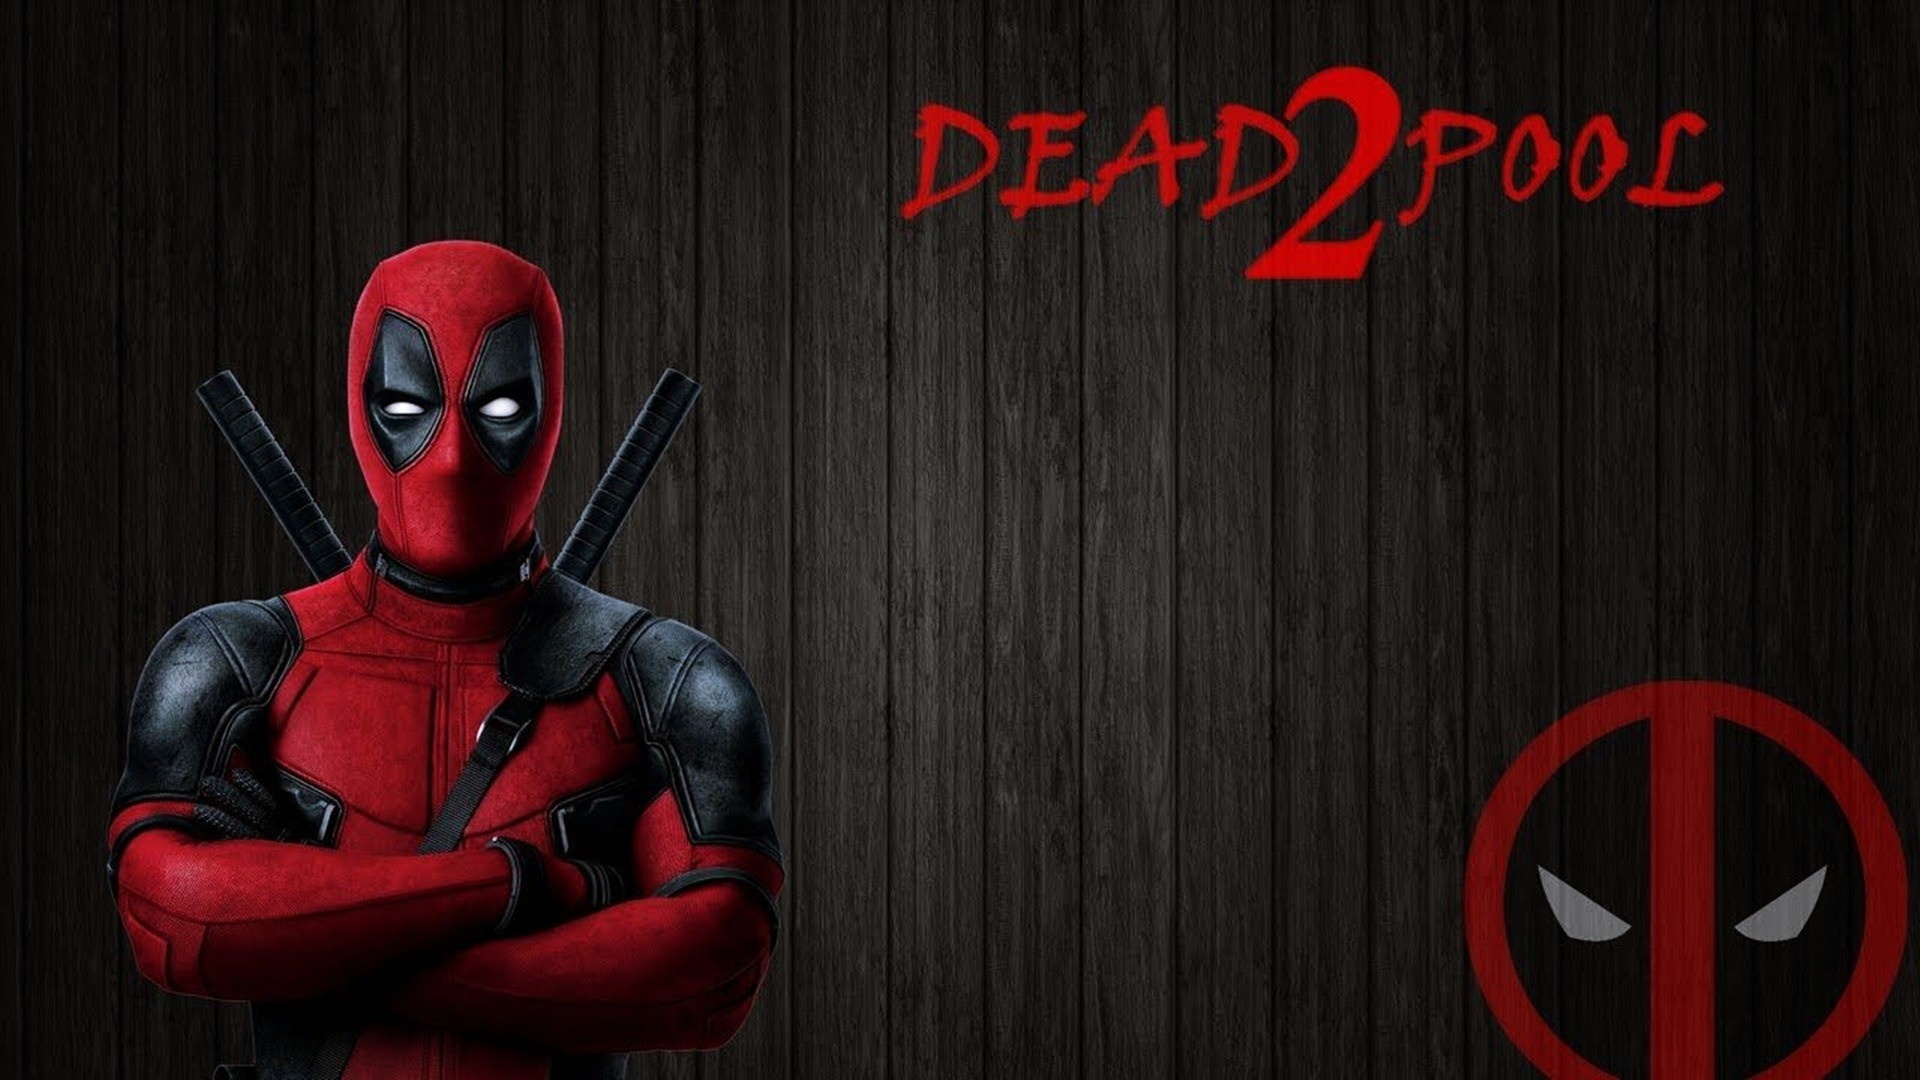 Deadpool 2 Wallpaper HD 30055 - Baltana
